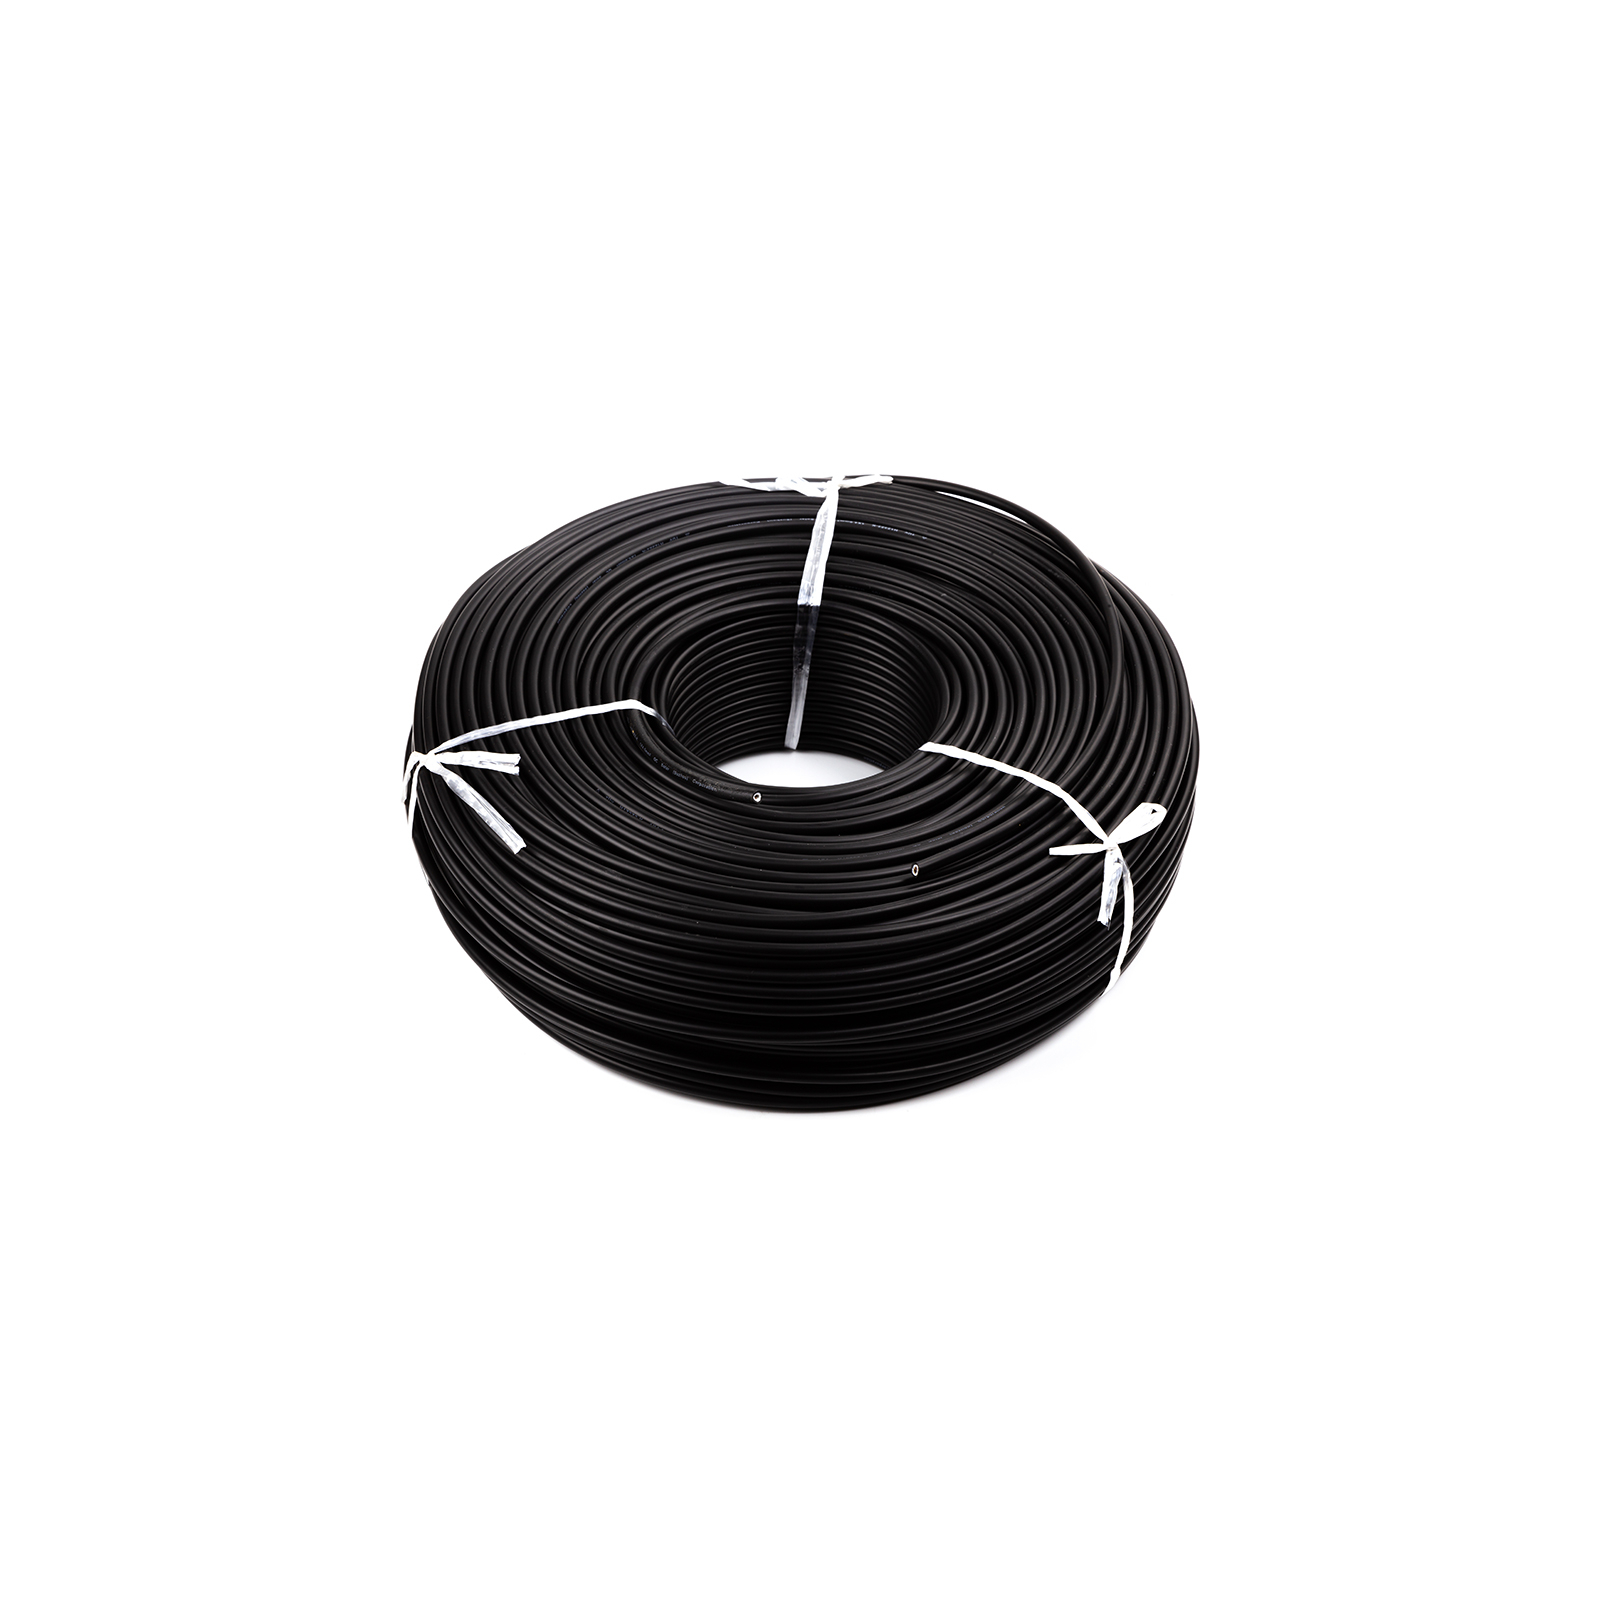 Кабель силовой PV кабель 4 мм, black, 200м=1бхт HiSmart (NV820092)